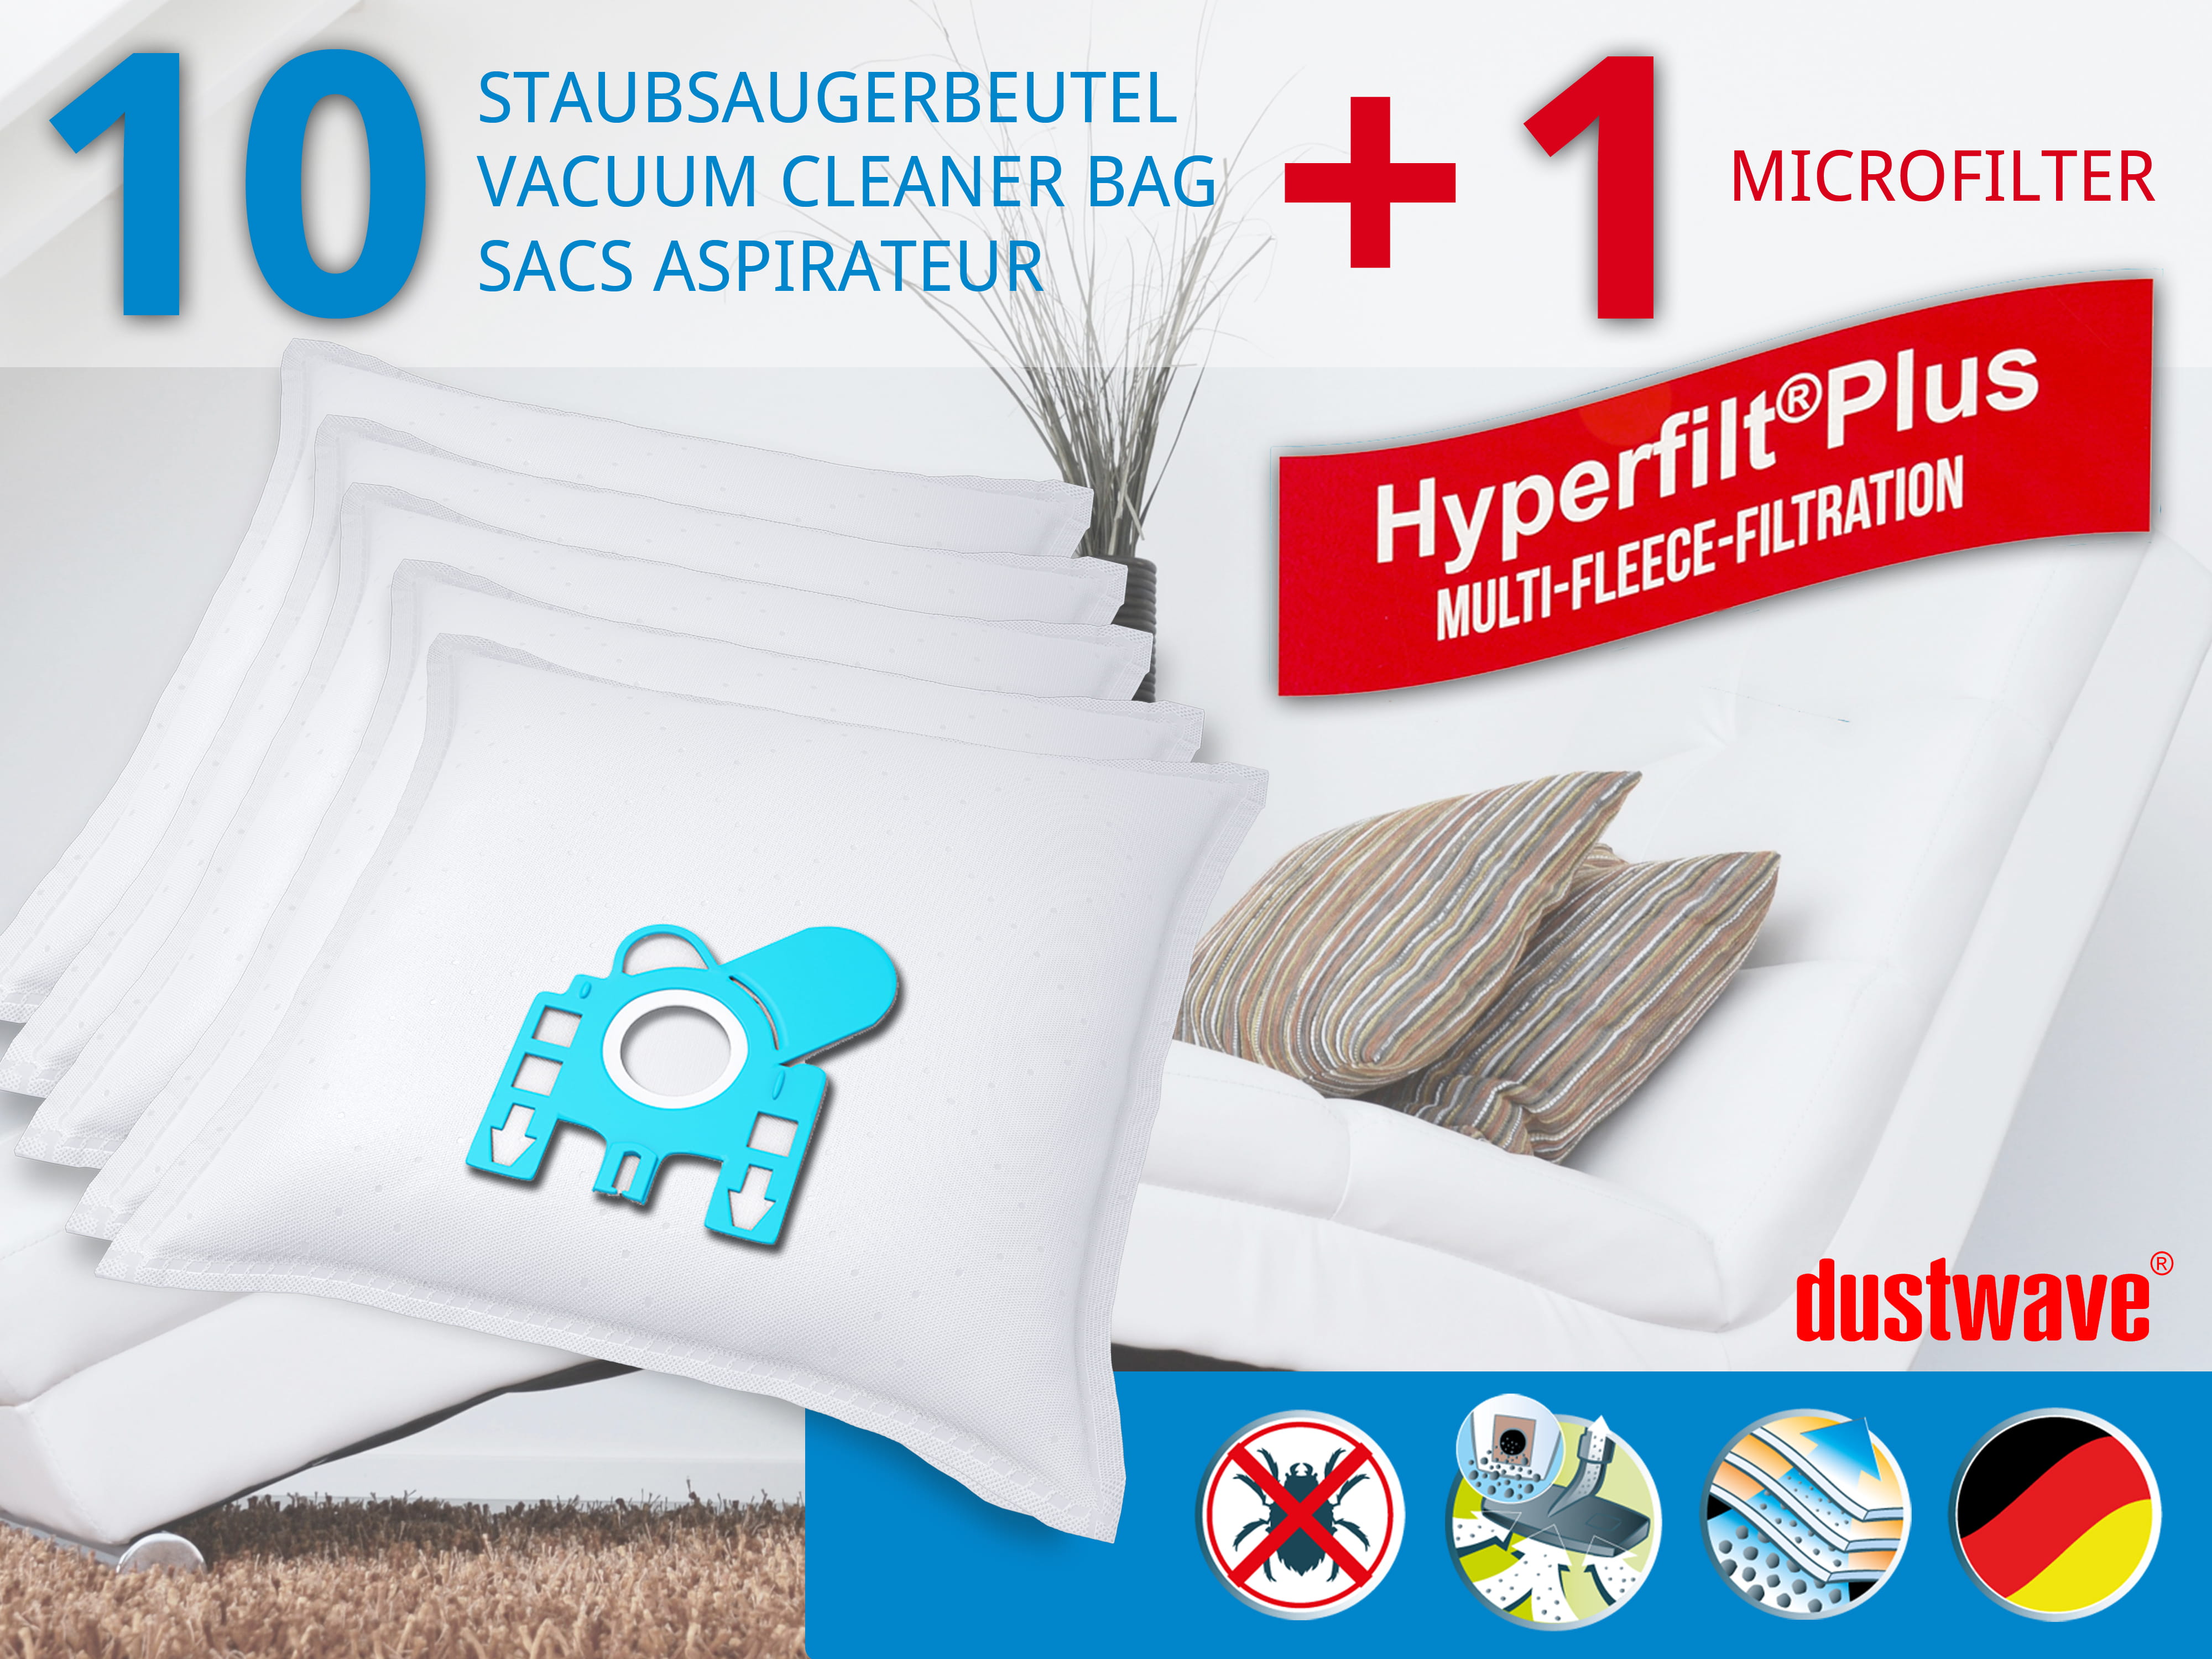 Dustwave® 10 Staubsaugerbeutel für Hoover TPP 2330 011 - hocheffizient, mehrlagiges Mikrovlies mit Hygieneverschluss - Made in Germany